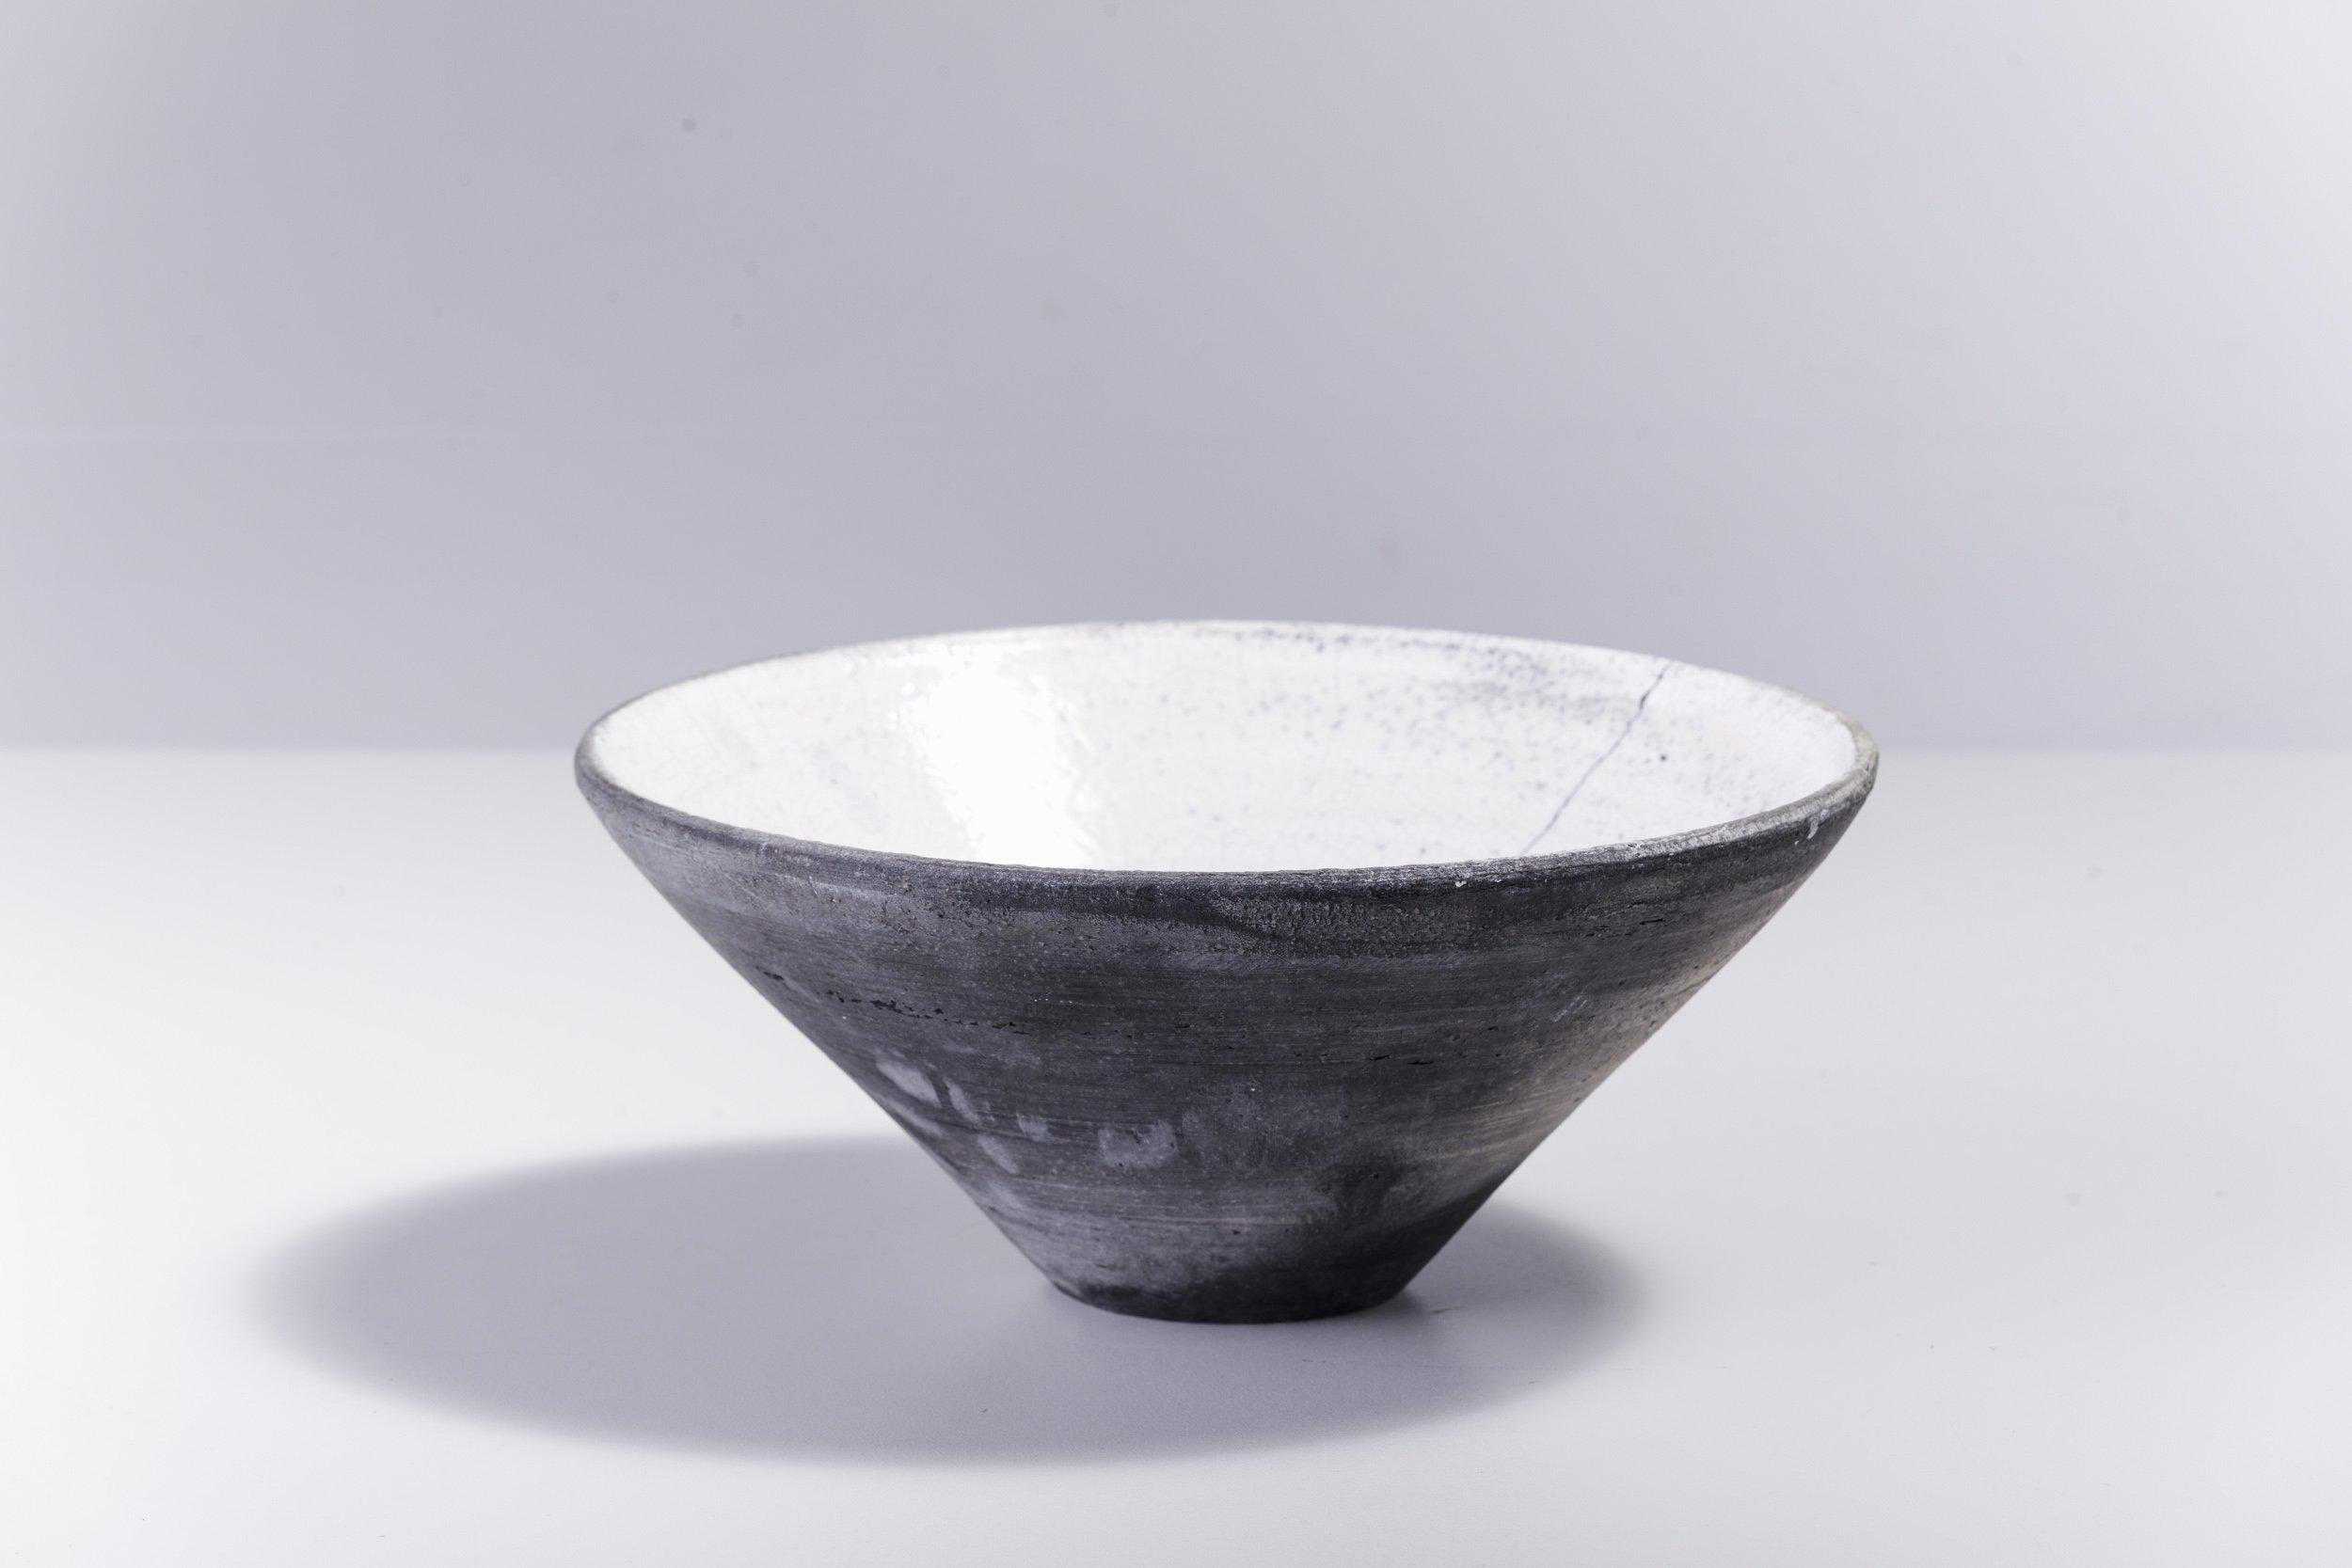 WU große Schüssel

Diese wunderschöne Schale aus Keramik, die nach der traditionellen japanischen Töpfertechnik des Raku-Nacktbrandes handgefertigt wurde, ist ein zeitloses, vielseitig einsetzbares Designstück mit einzigartigem Charakter. Sie ist